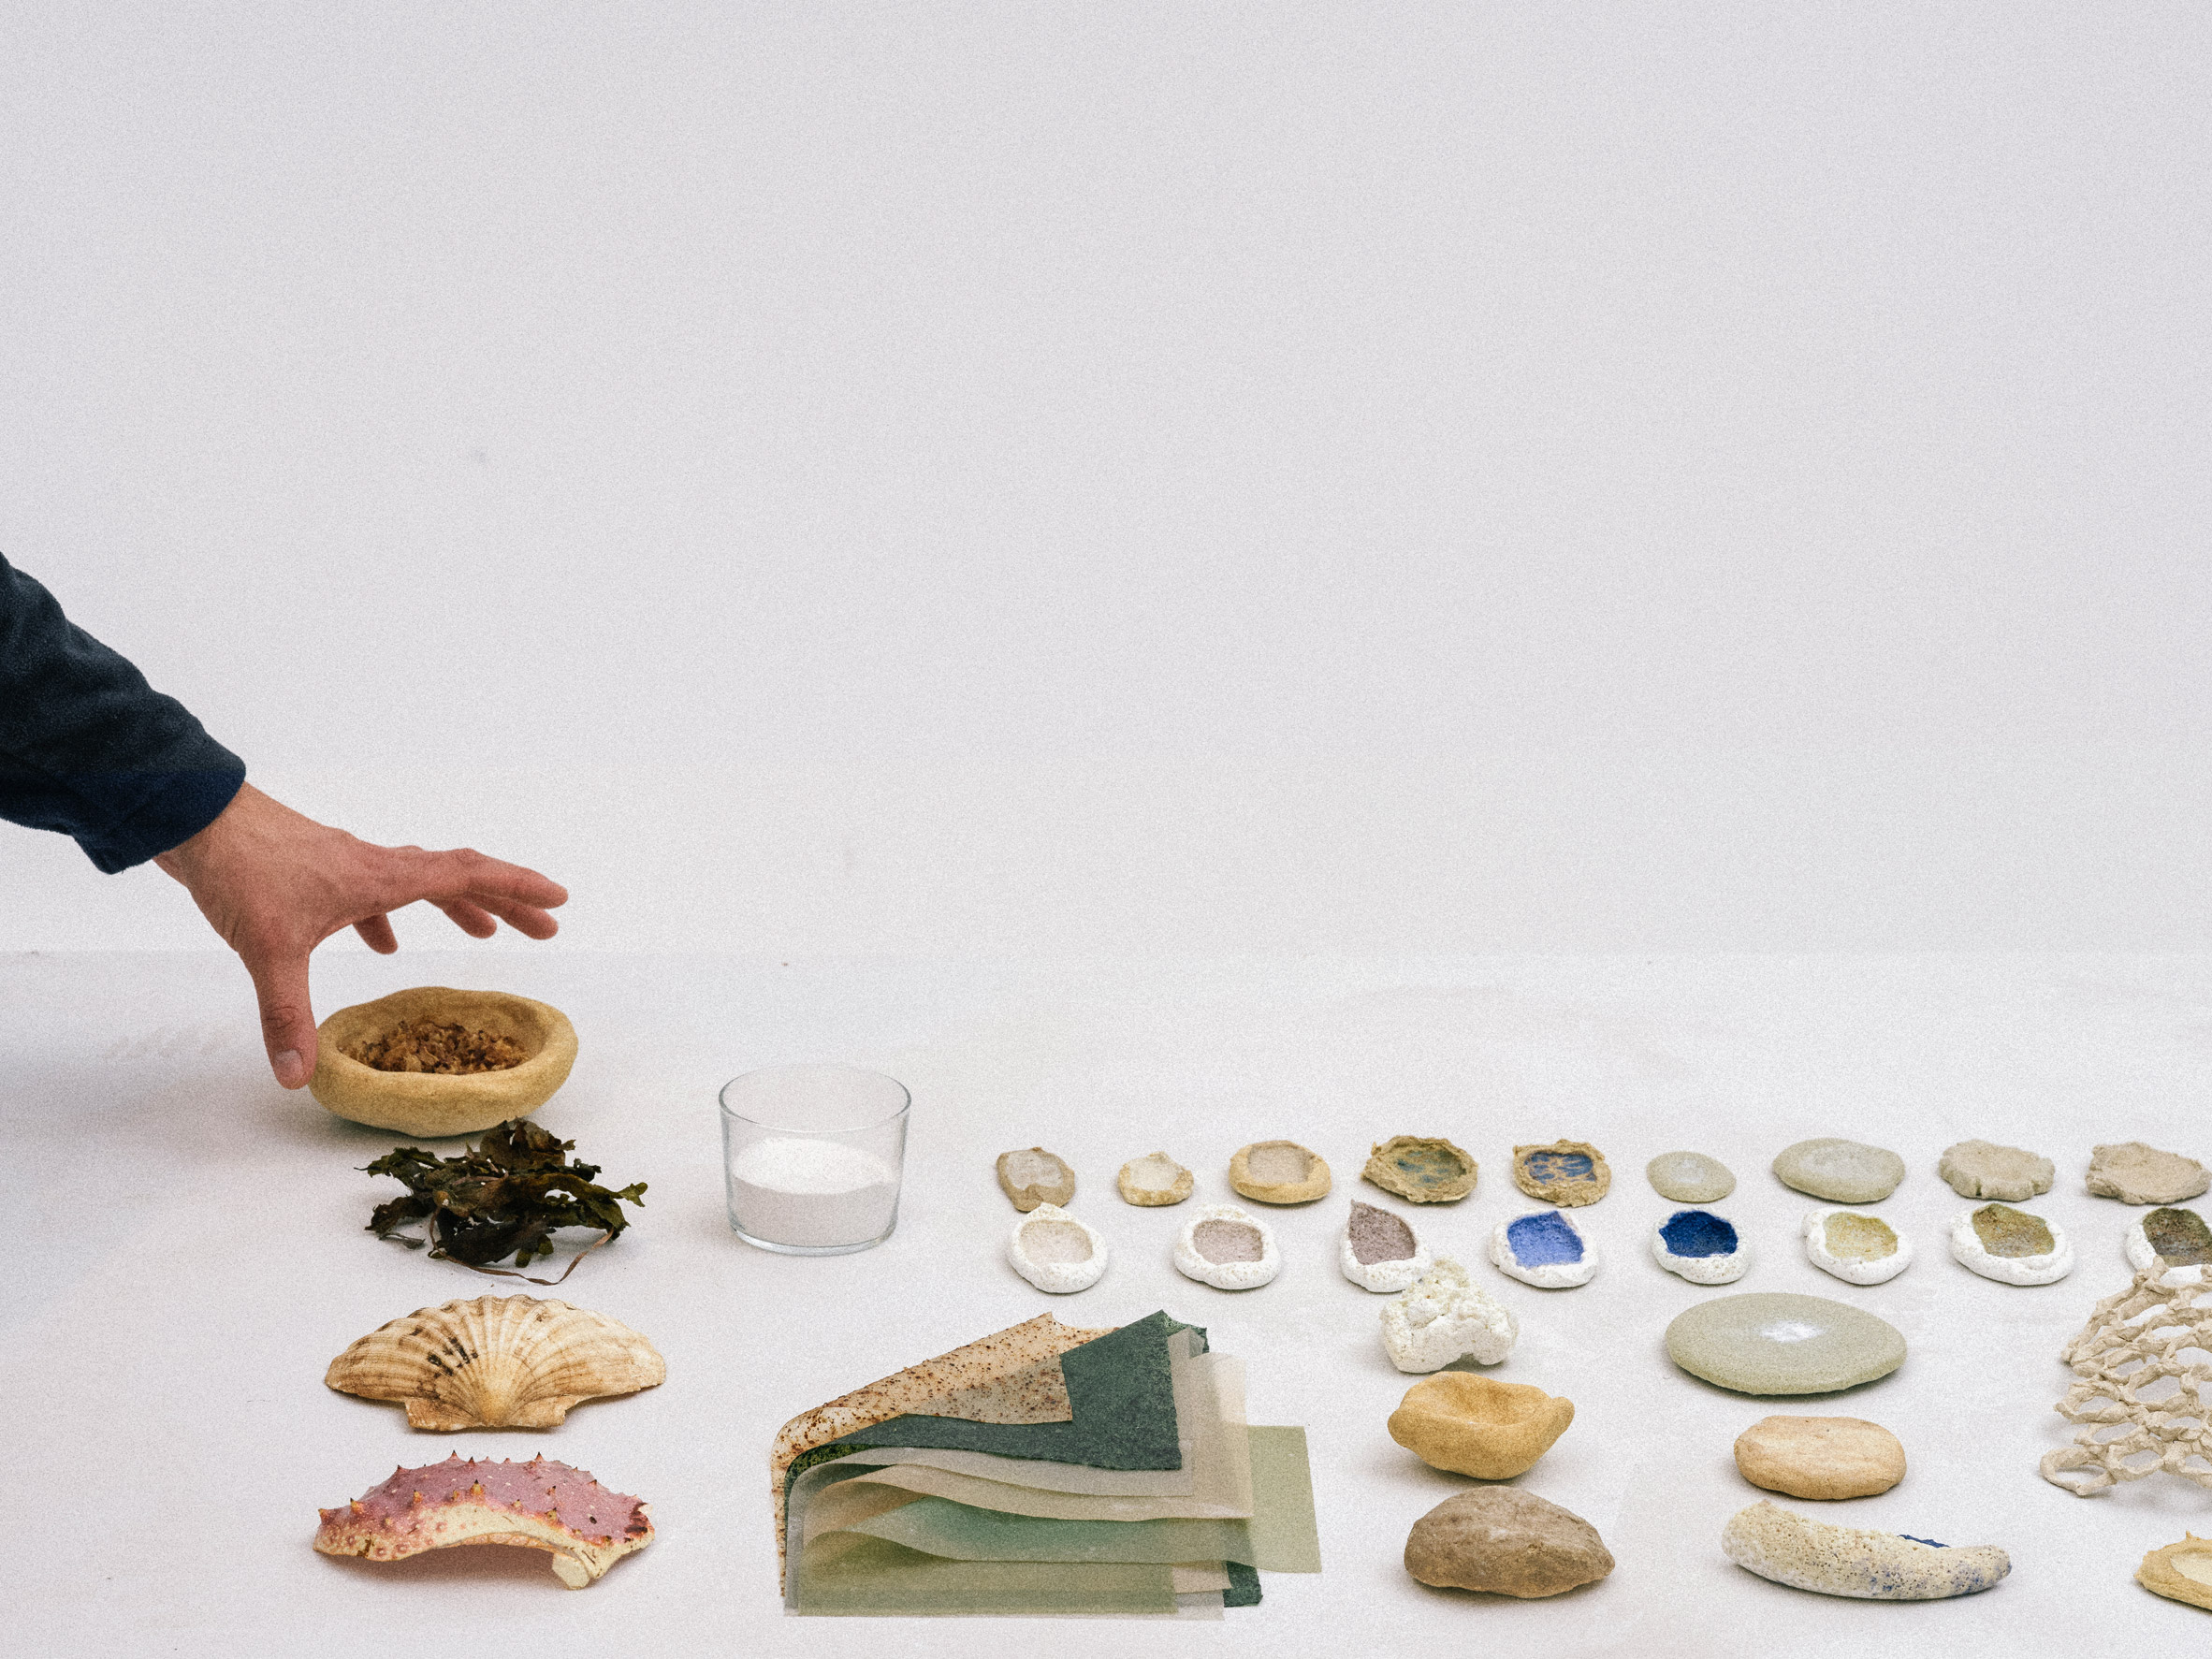 Natural Material Studio develops Shellware ceramics from seashells